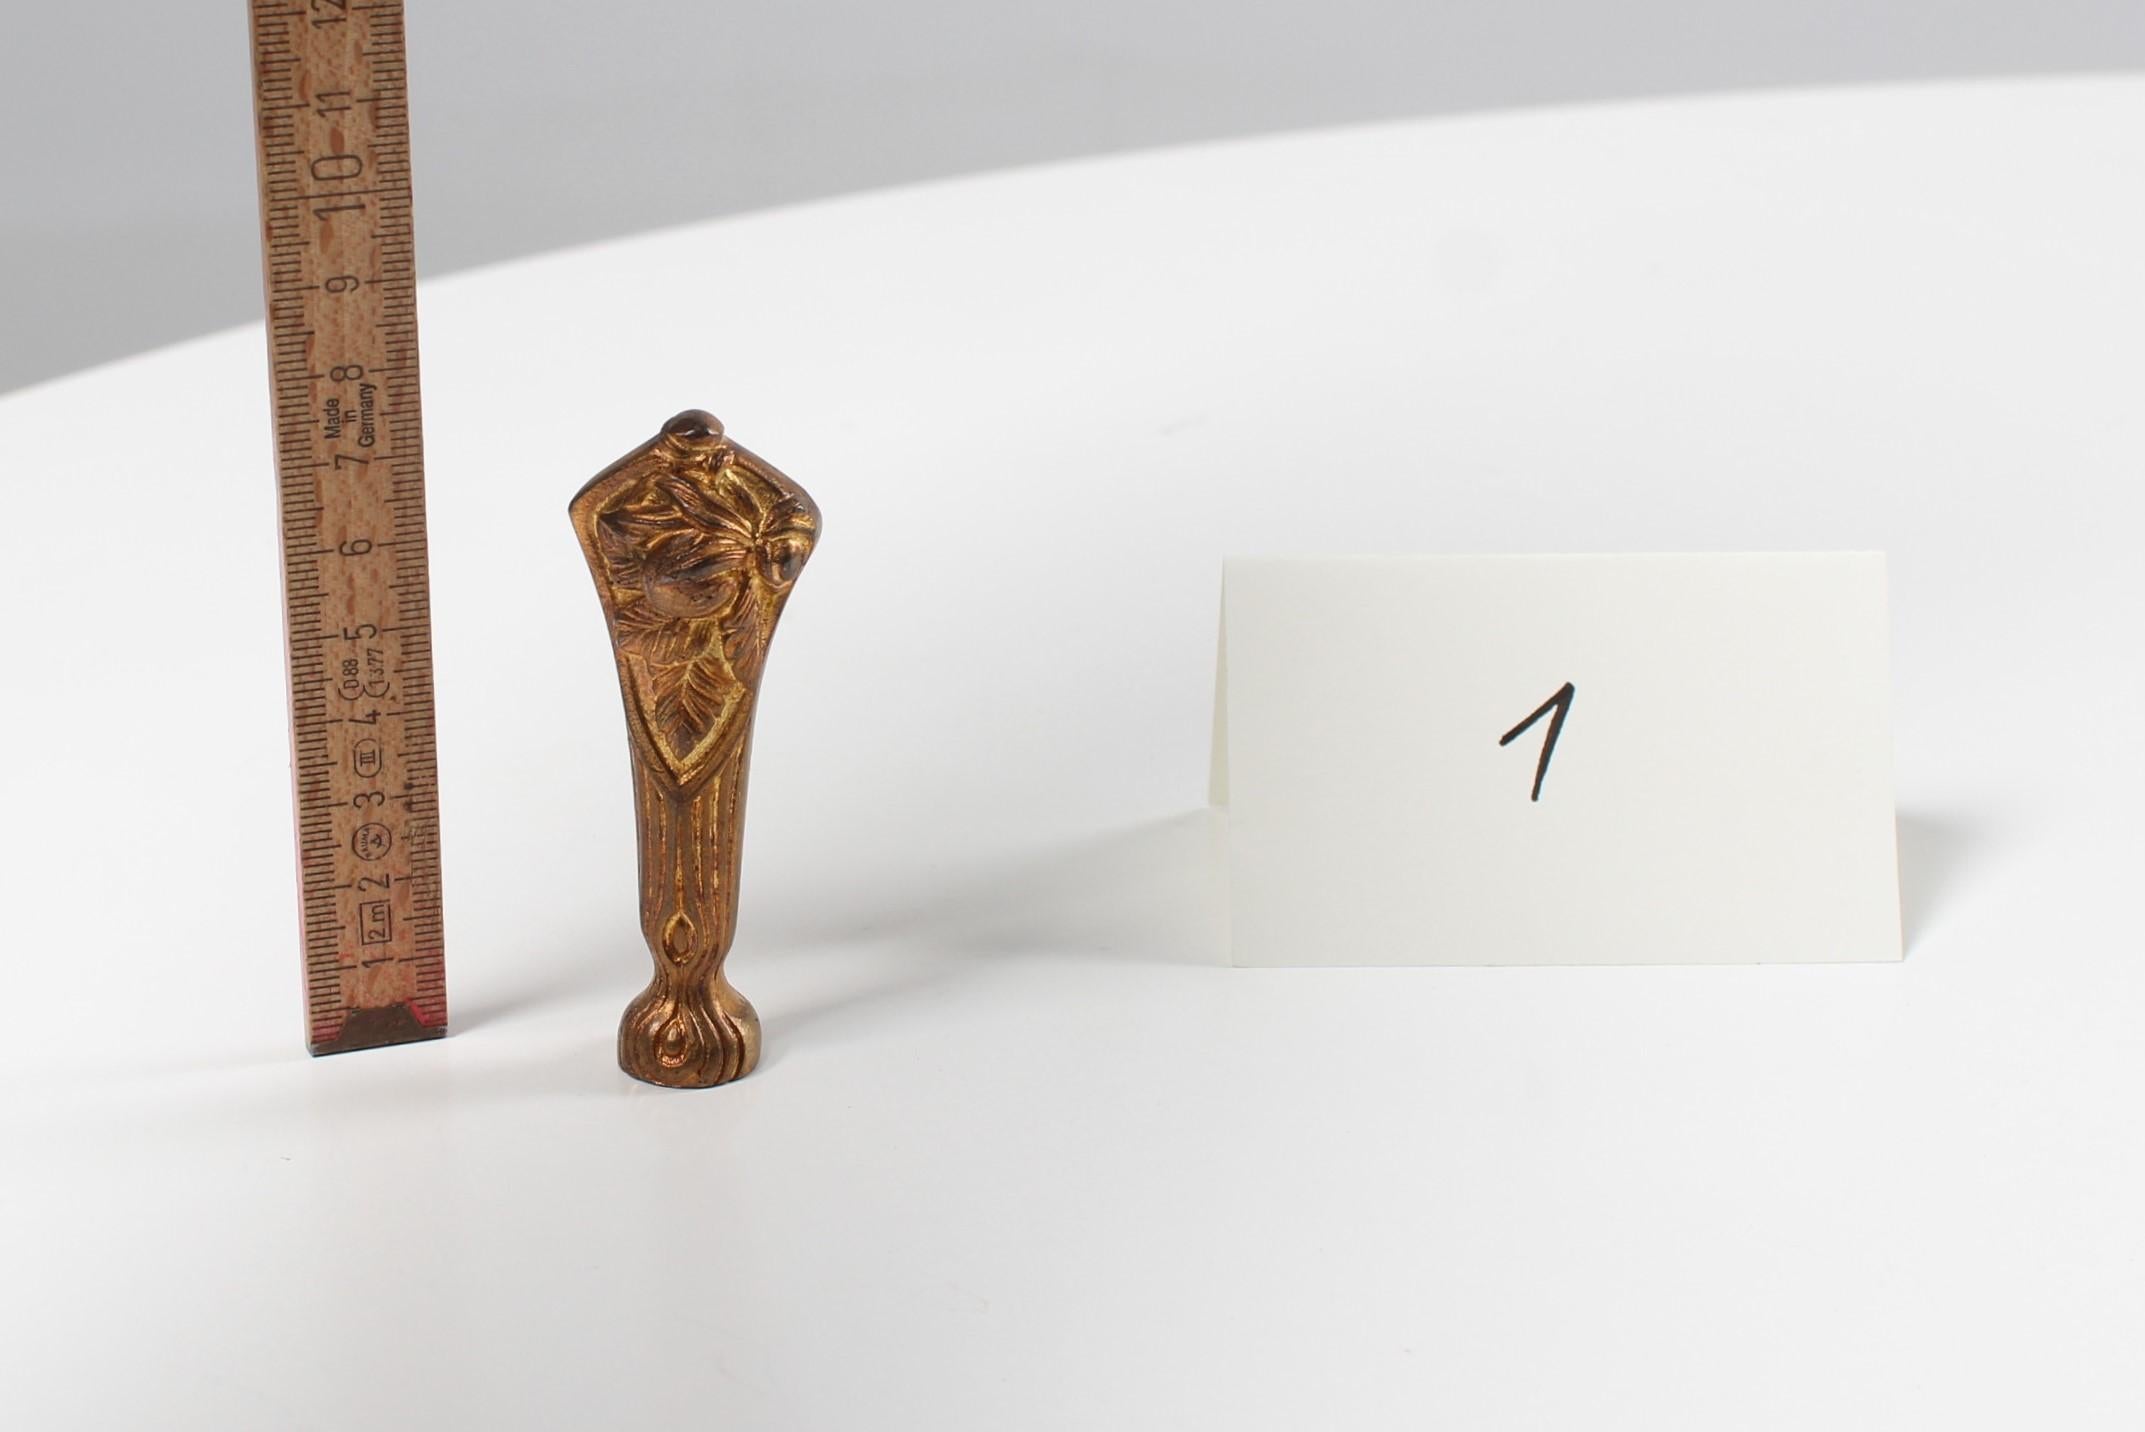 Magnifique timbre pour sceller la cire avec les initiales F.J., conservé de manière authentique